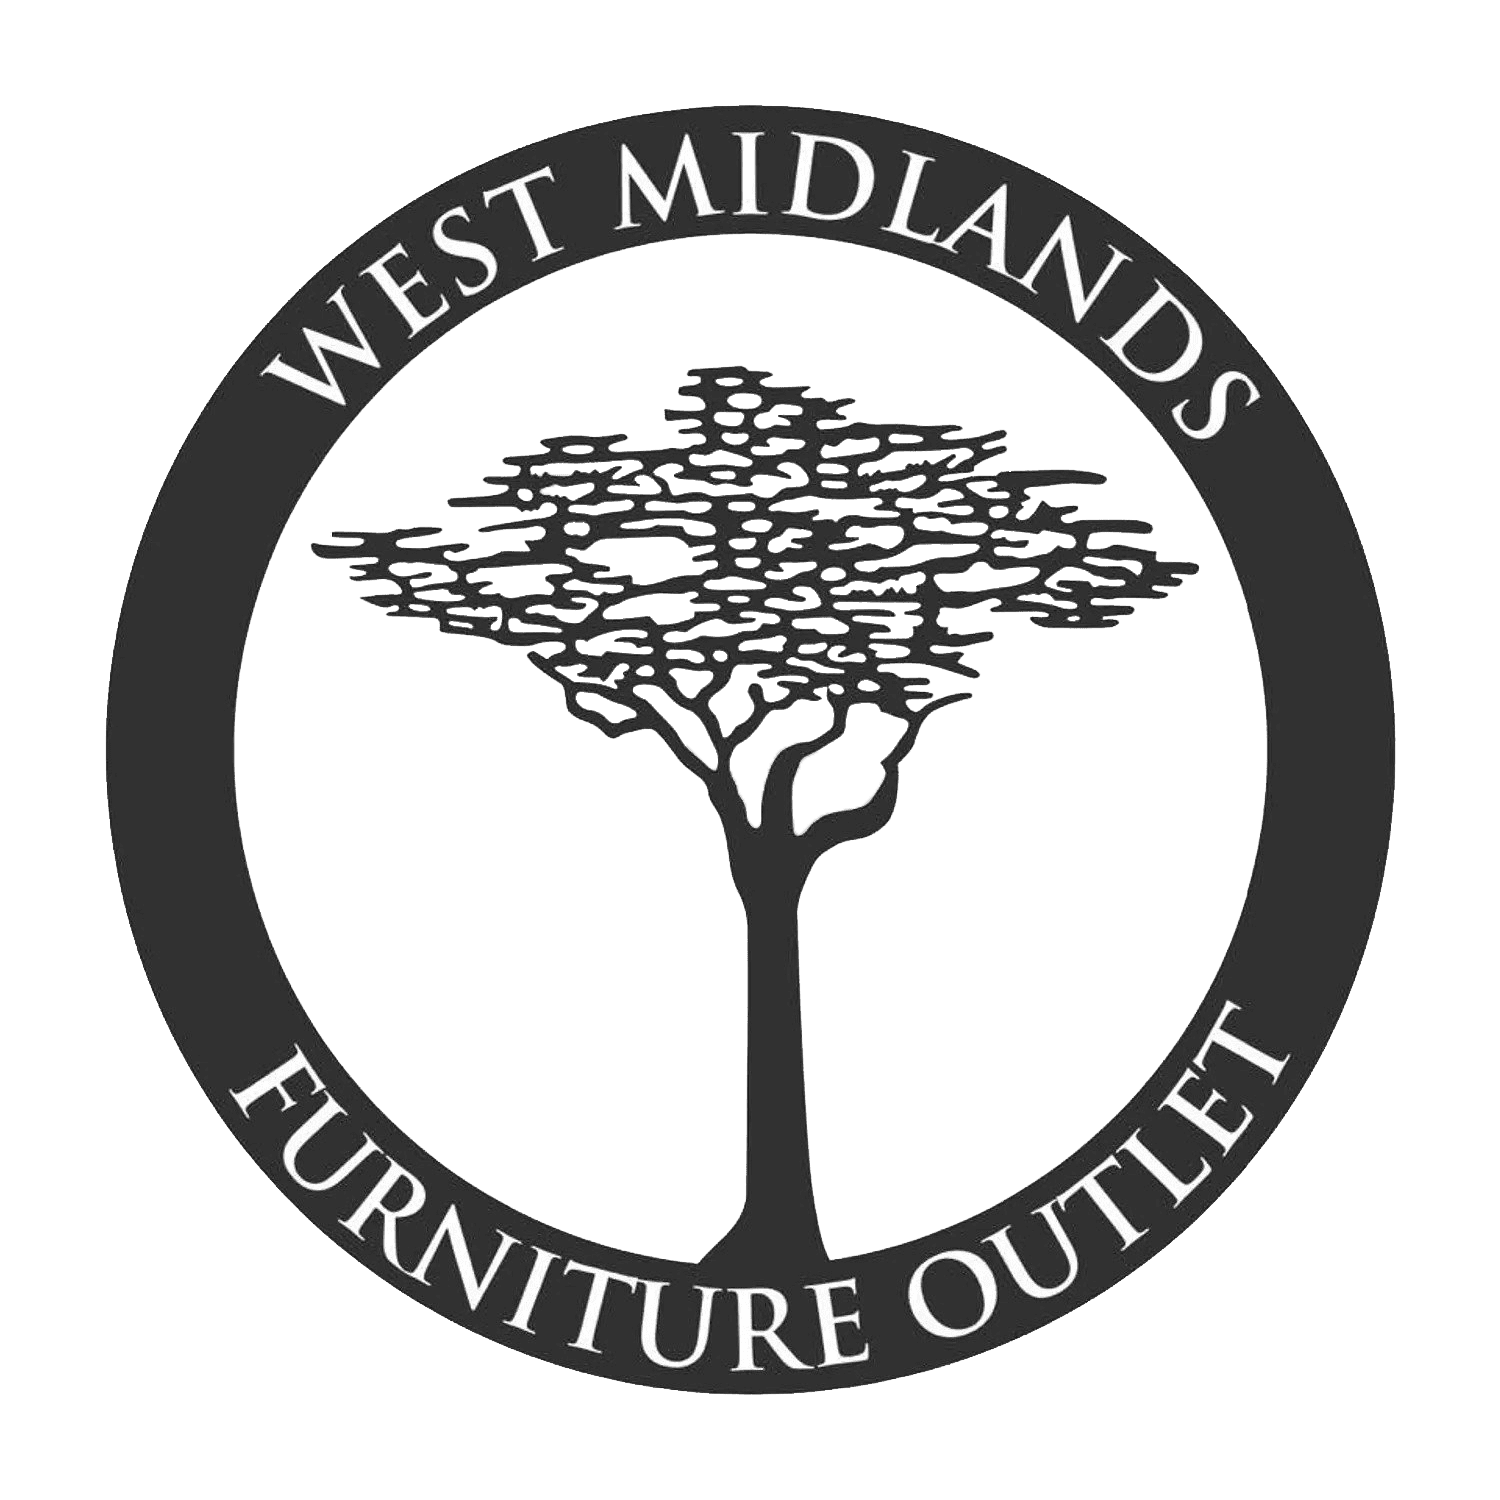 West Midlands Furniture Outlet